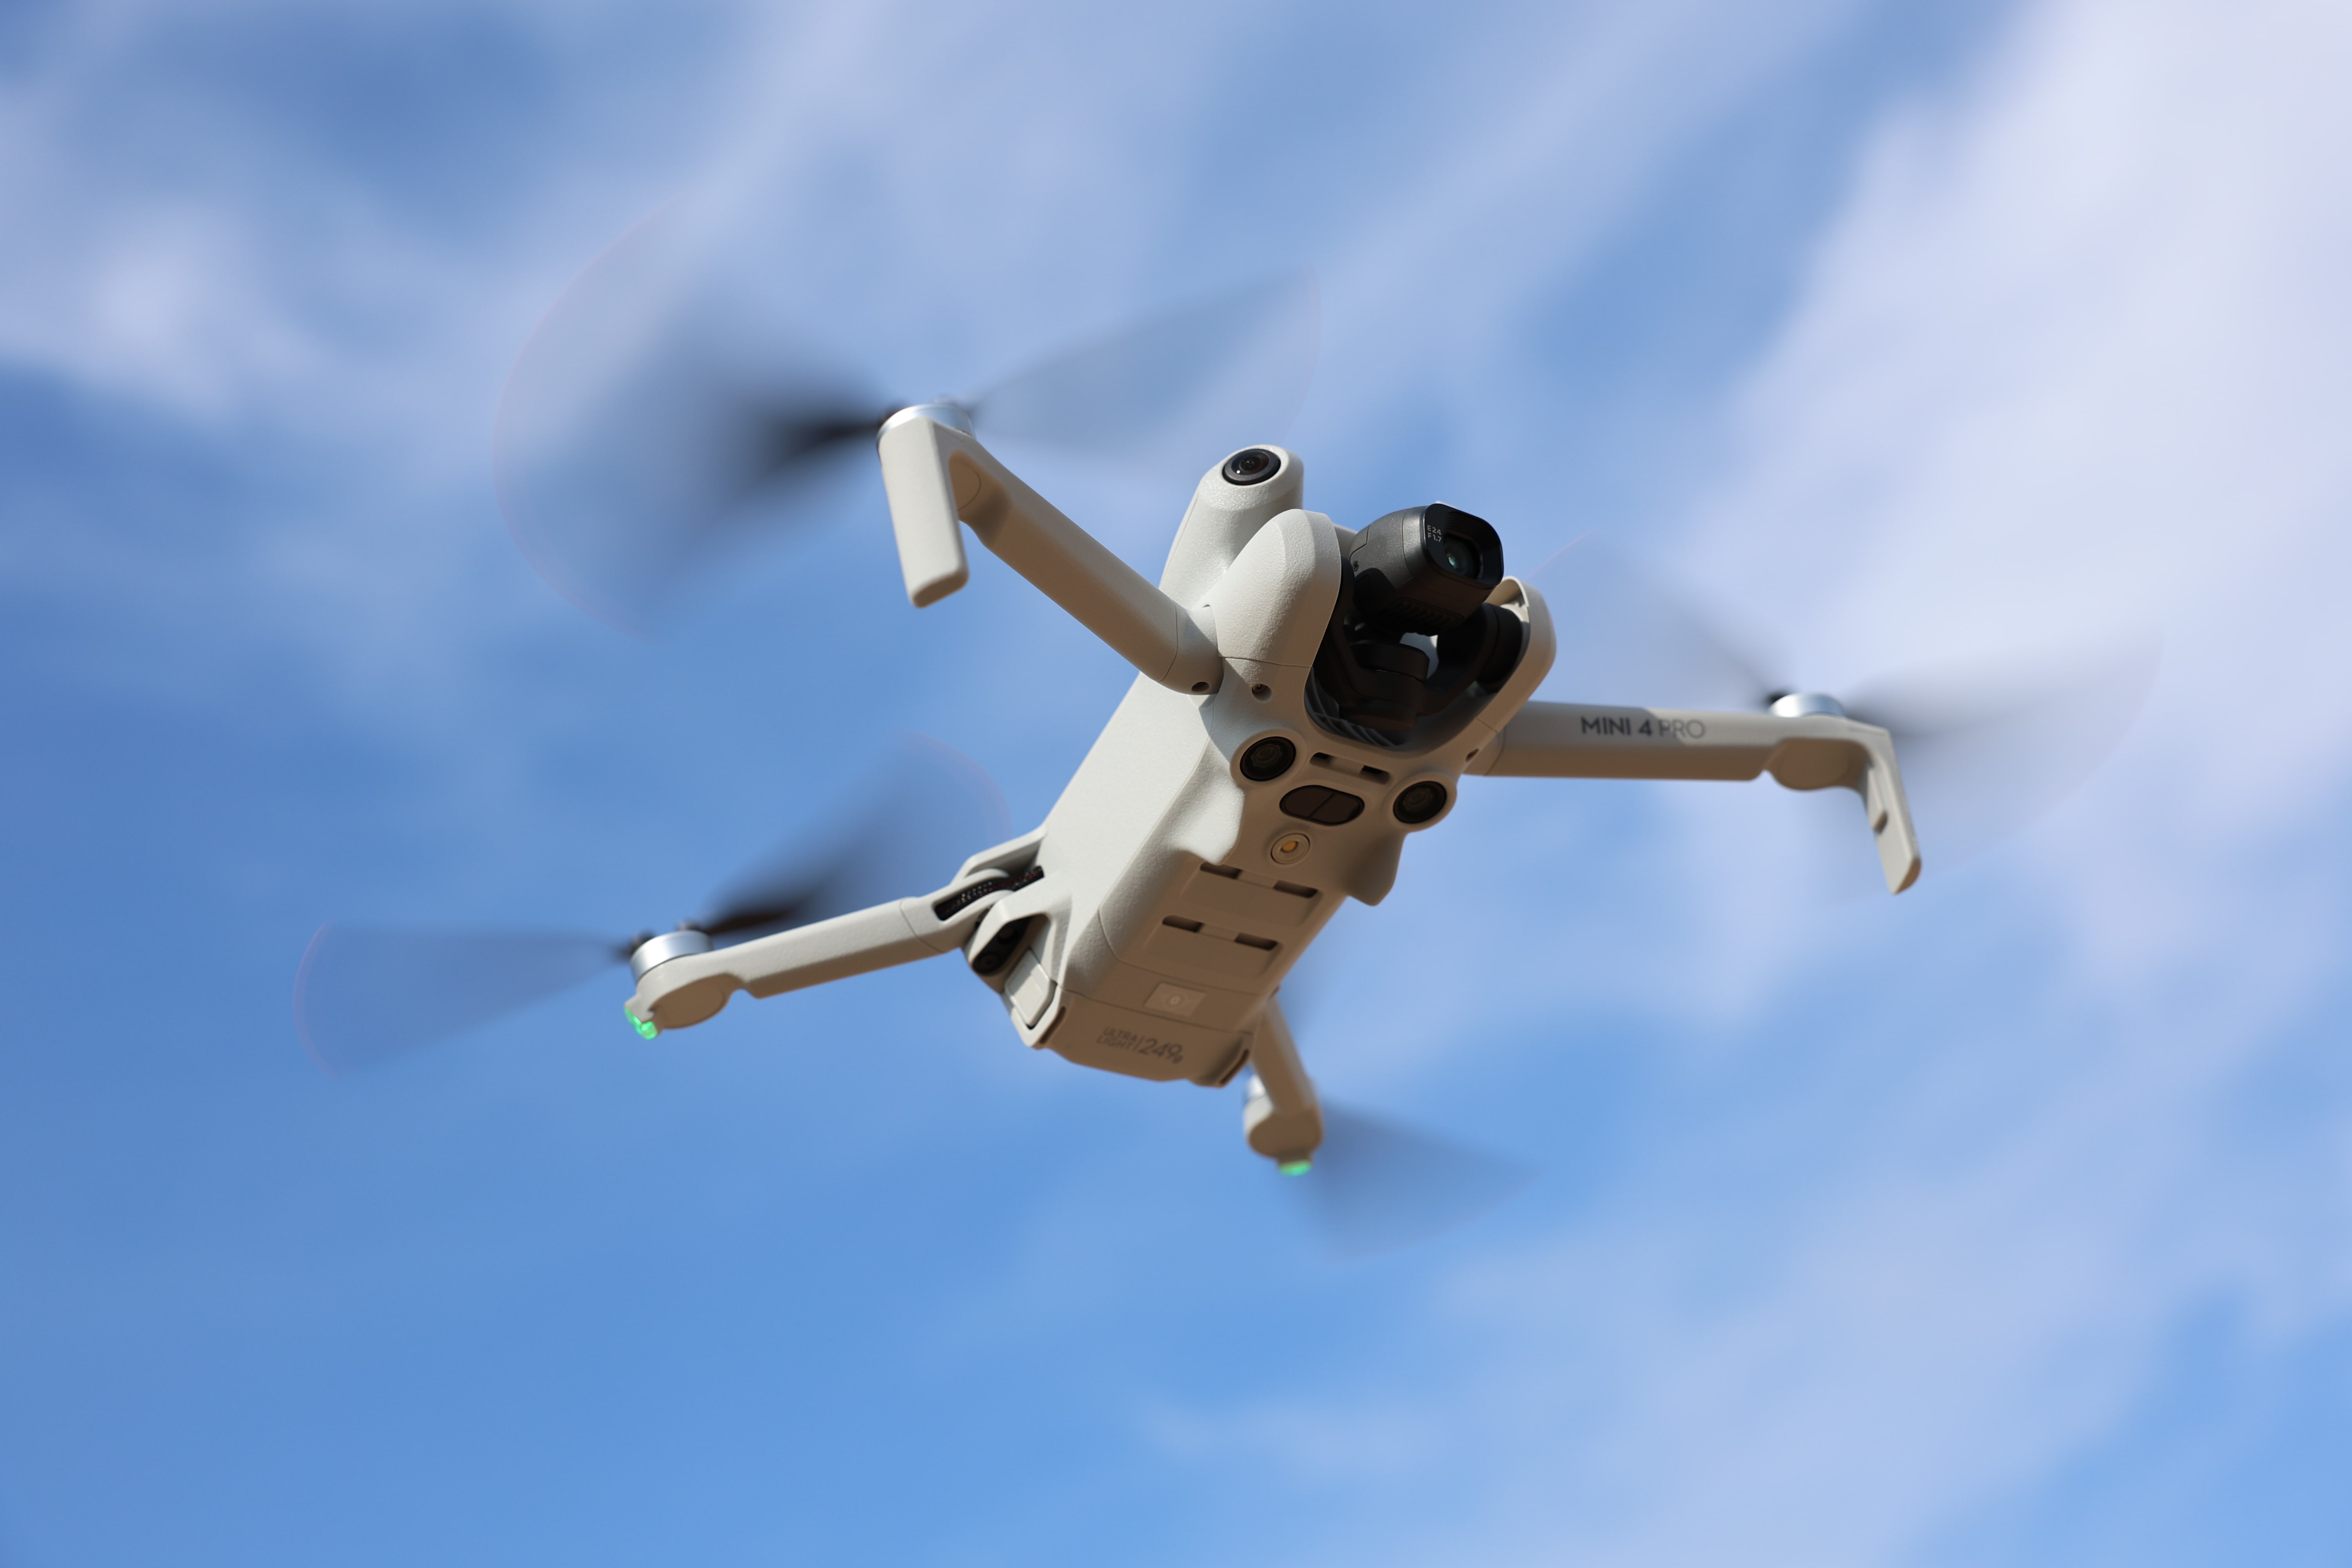 Mini 4 Pro: Deine neue Drohne für professionelle Luftaufnahmen